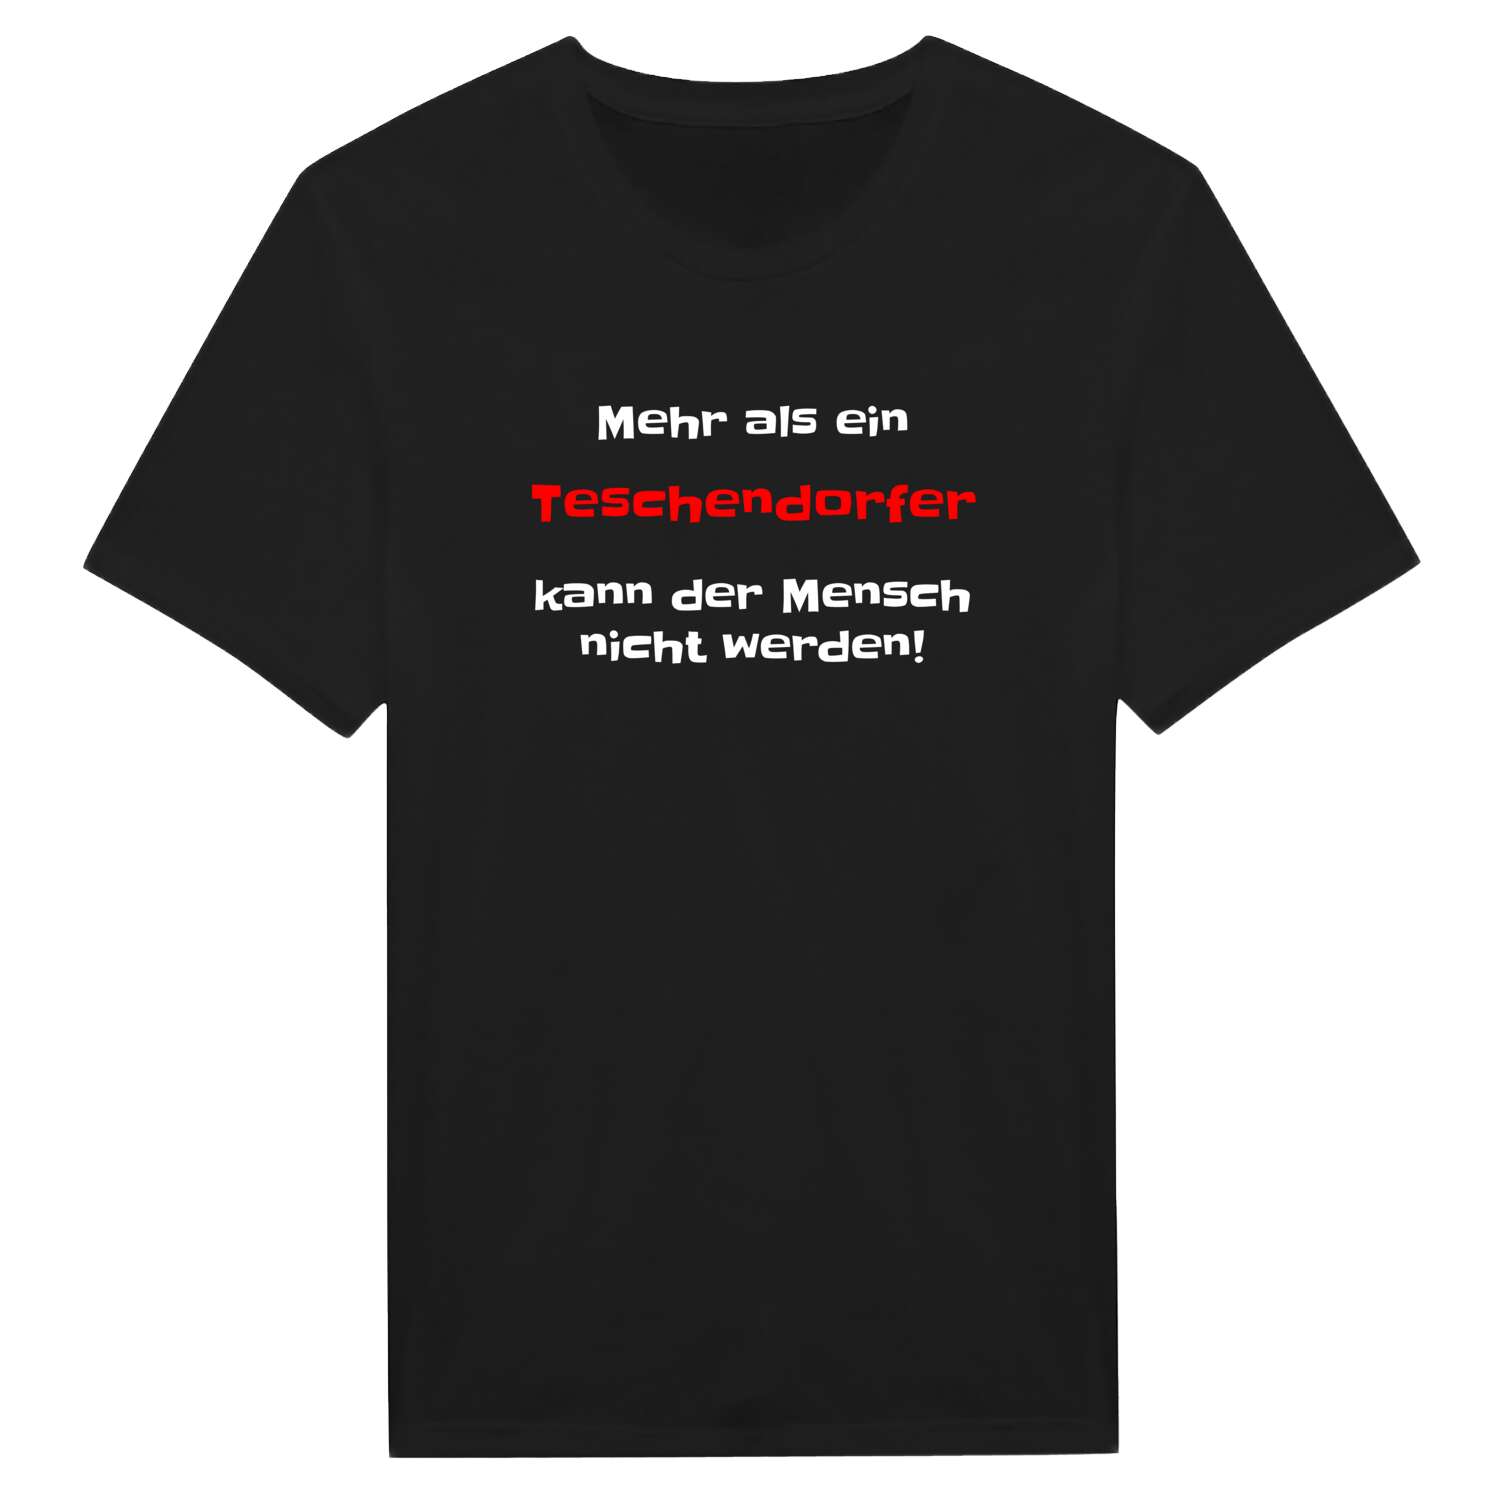 Teschendorf T-Shirt »Mehr als ein«